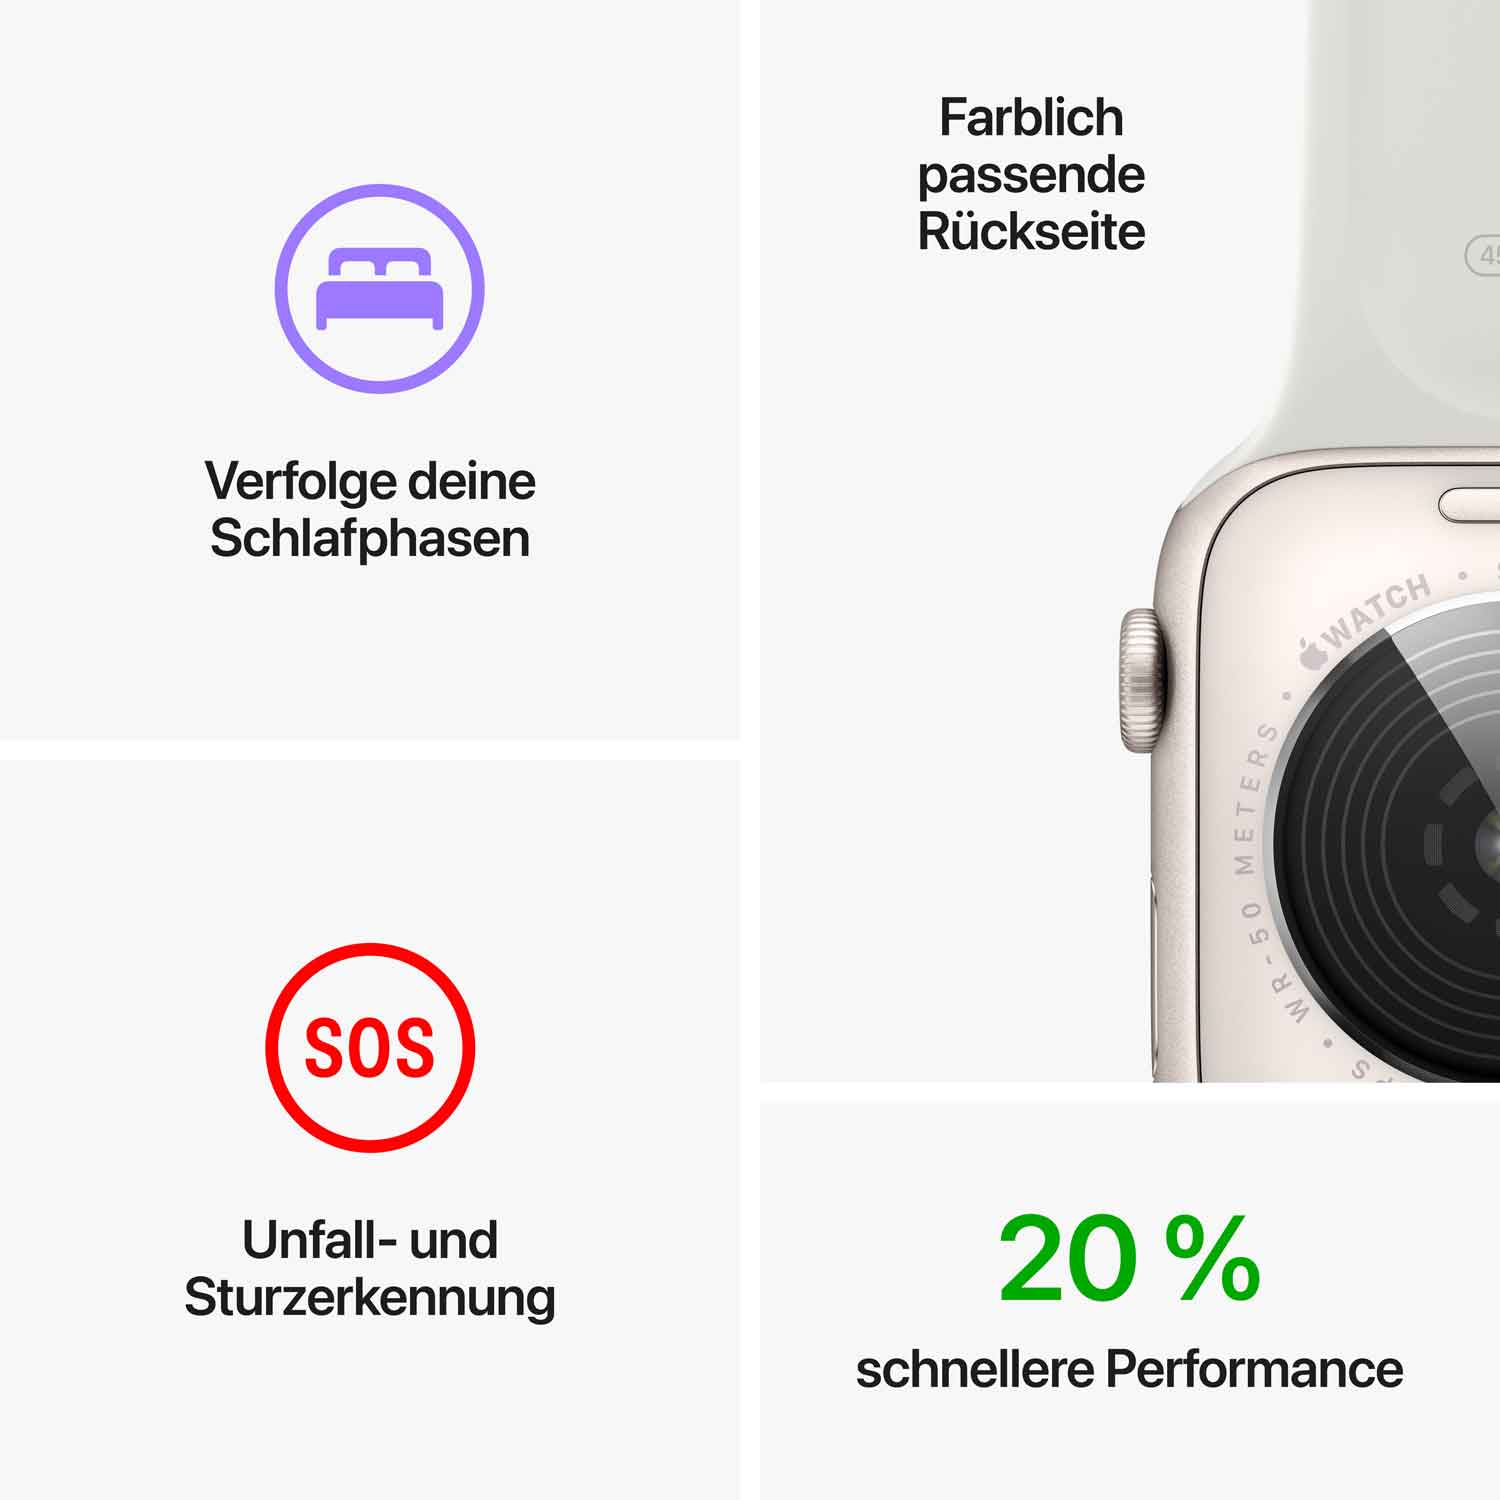 Apple Watch SE Aluminium 40mm Polarstern (Sportarmband polarstern) - 2022